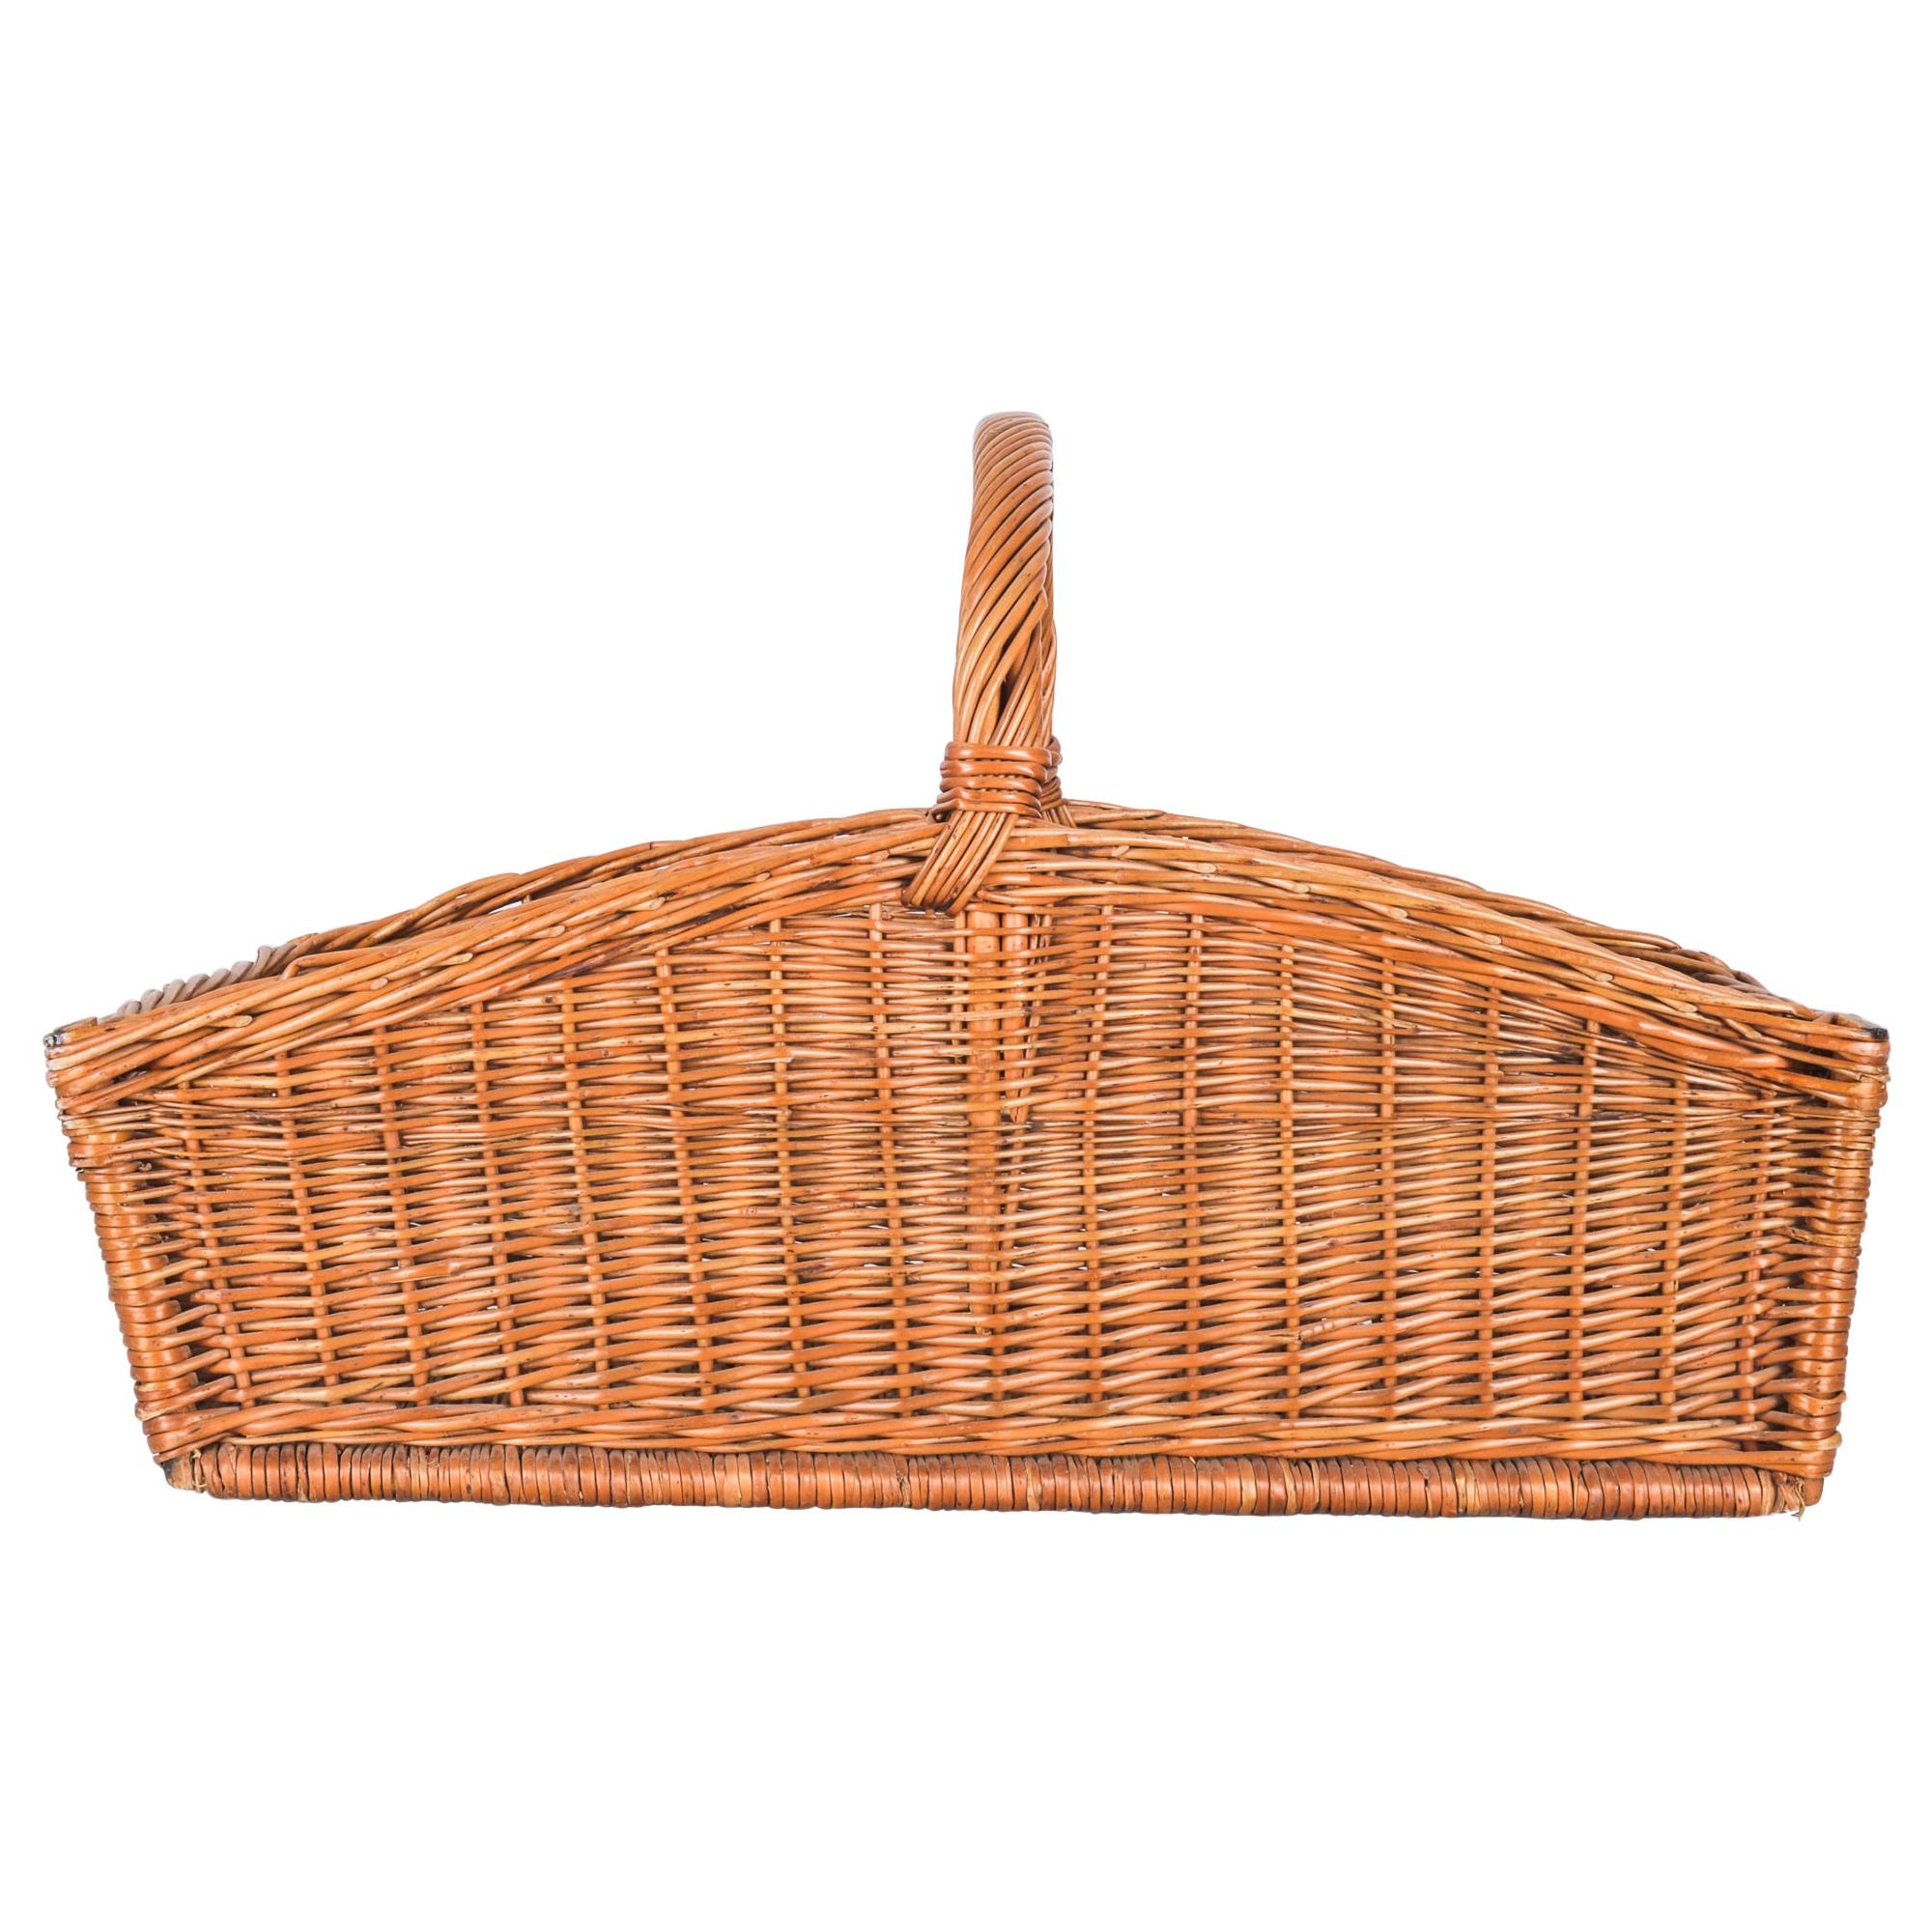 1940s French Wicker Basket